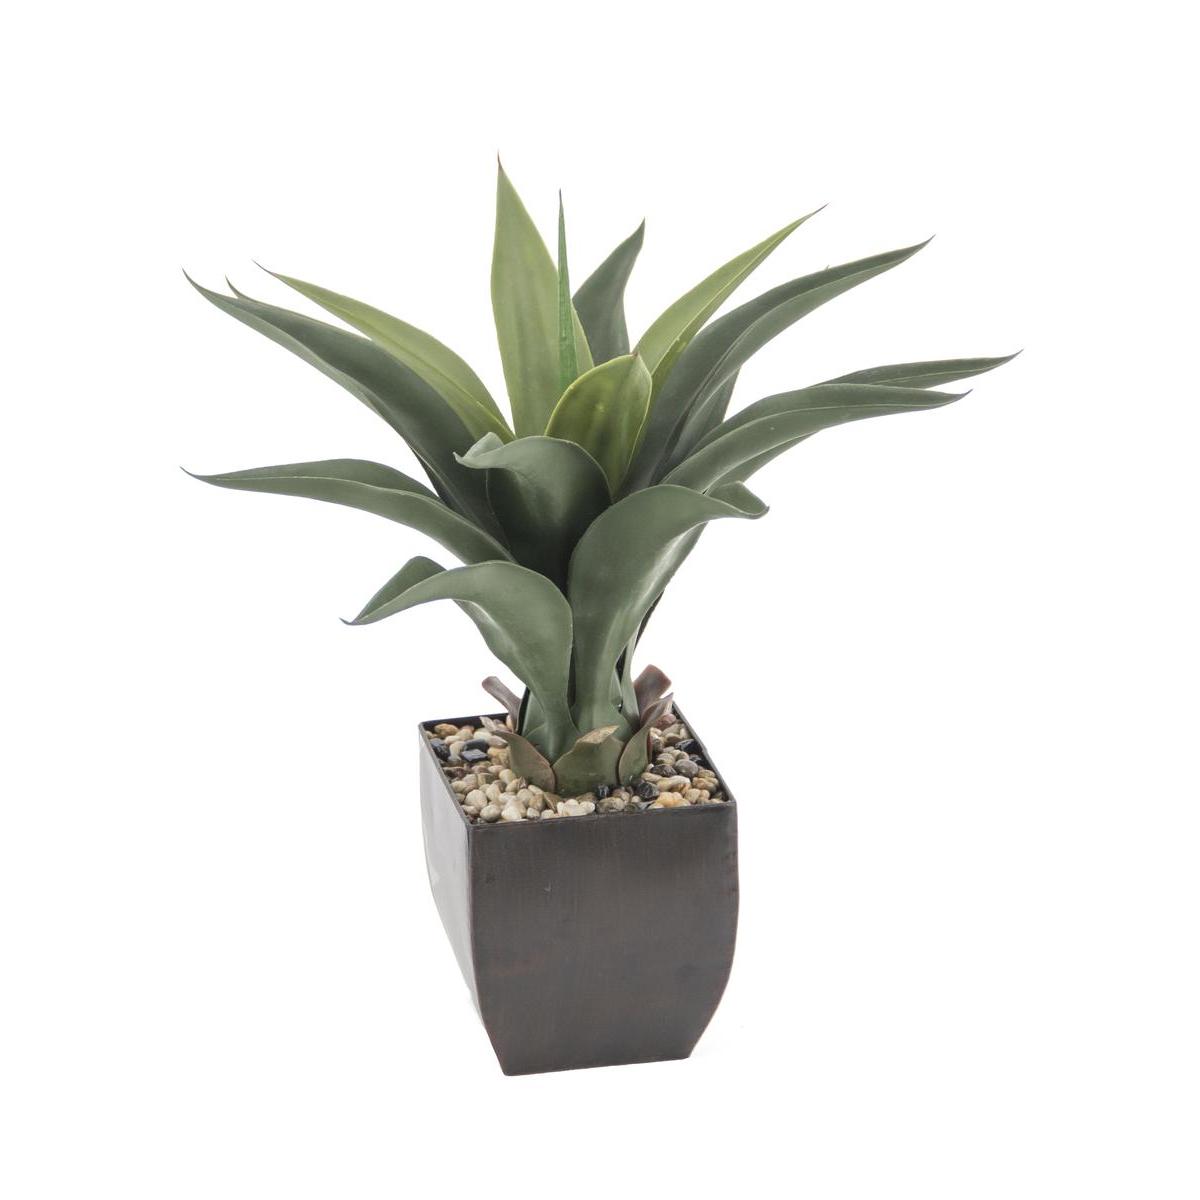 Plante d'Aloe en pot métal - H 56 cm